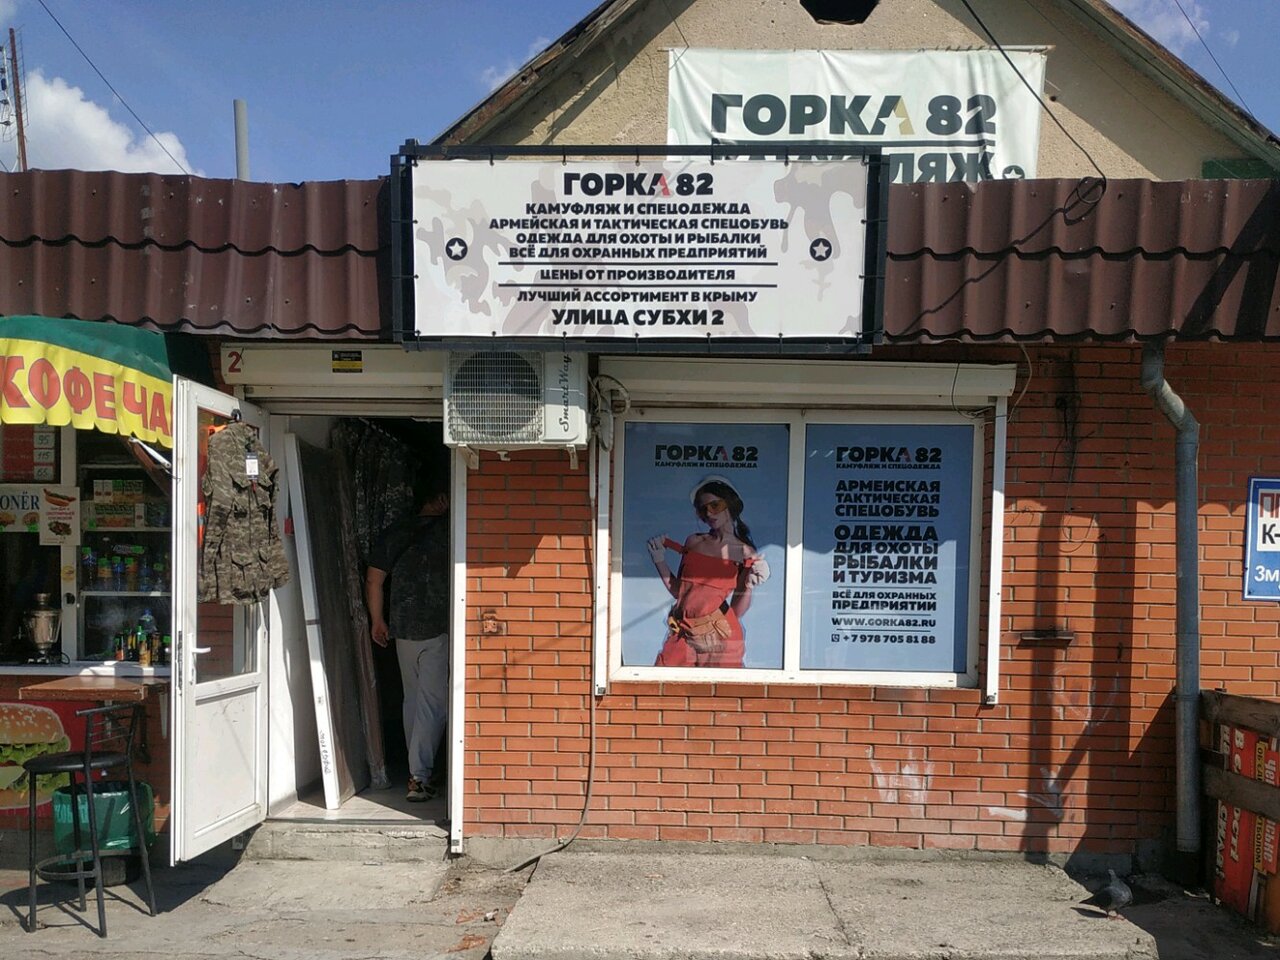 Магазин камуфляжа, спецодежды и снаряжения "Горка82" на Субхи в Симферополе